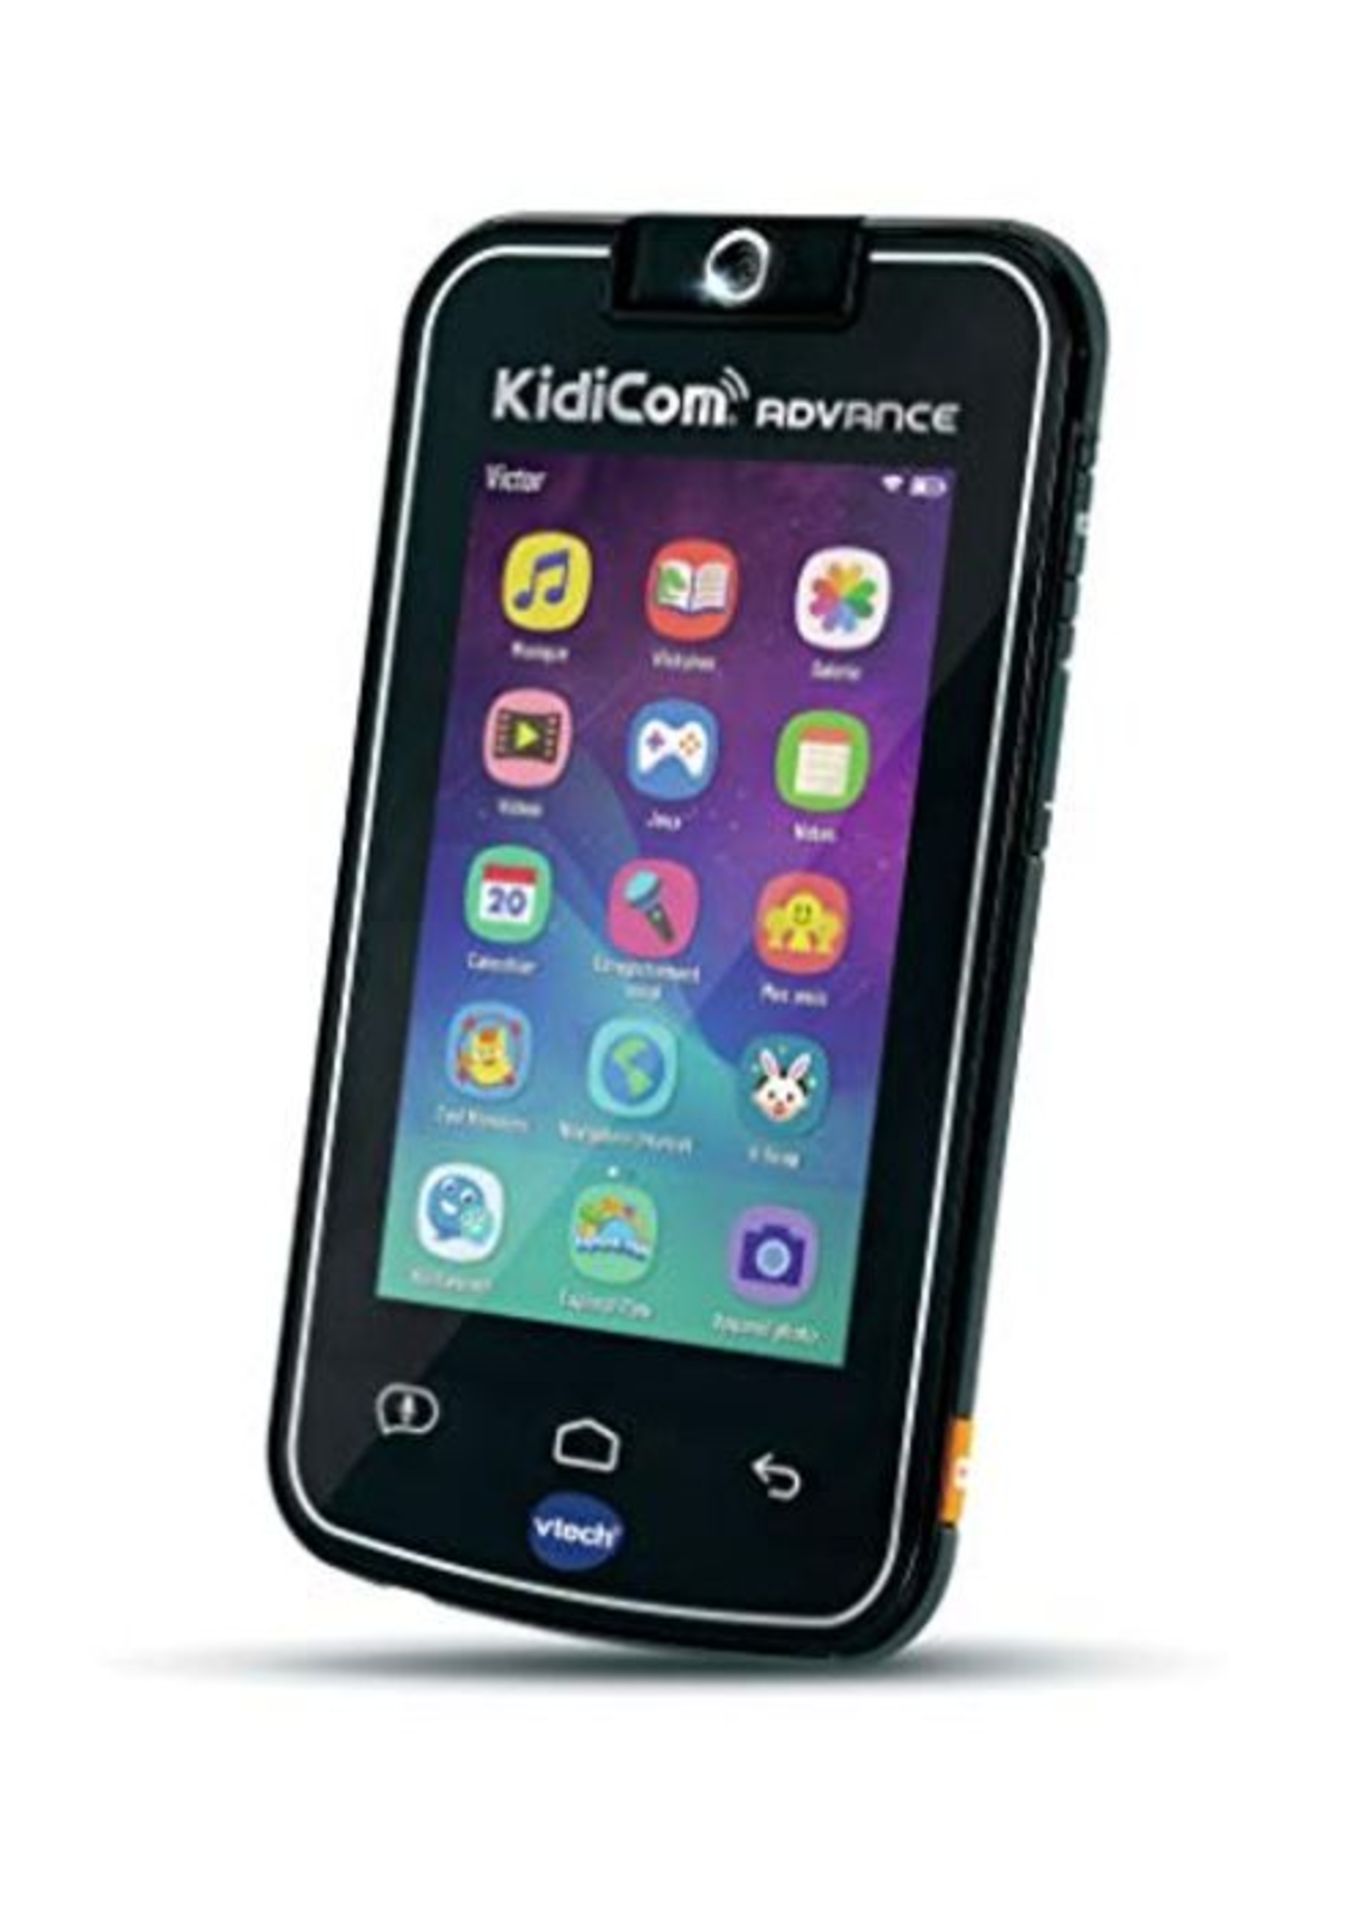 RRP £84.00 VTech KidiCom Advance Laptop for Children Black, French Version